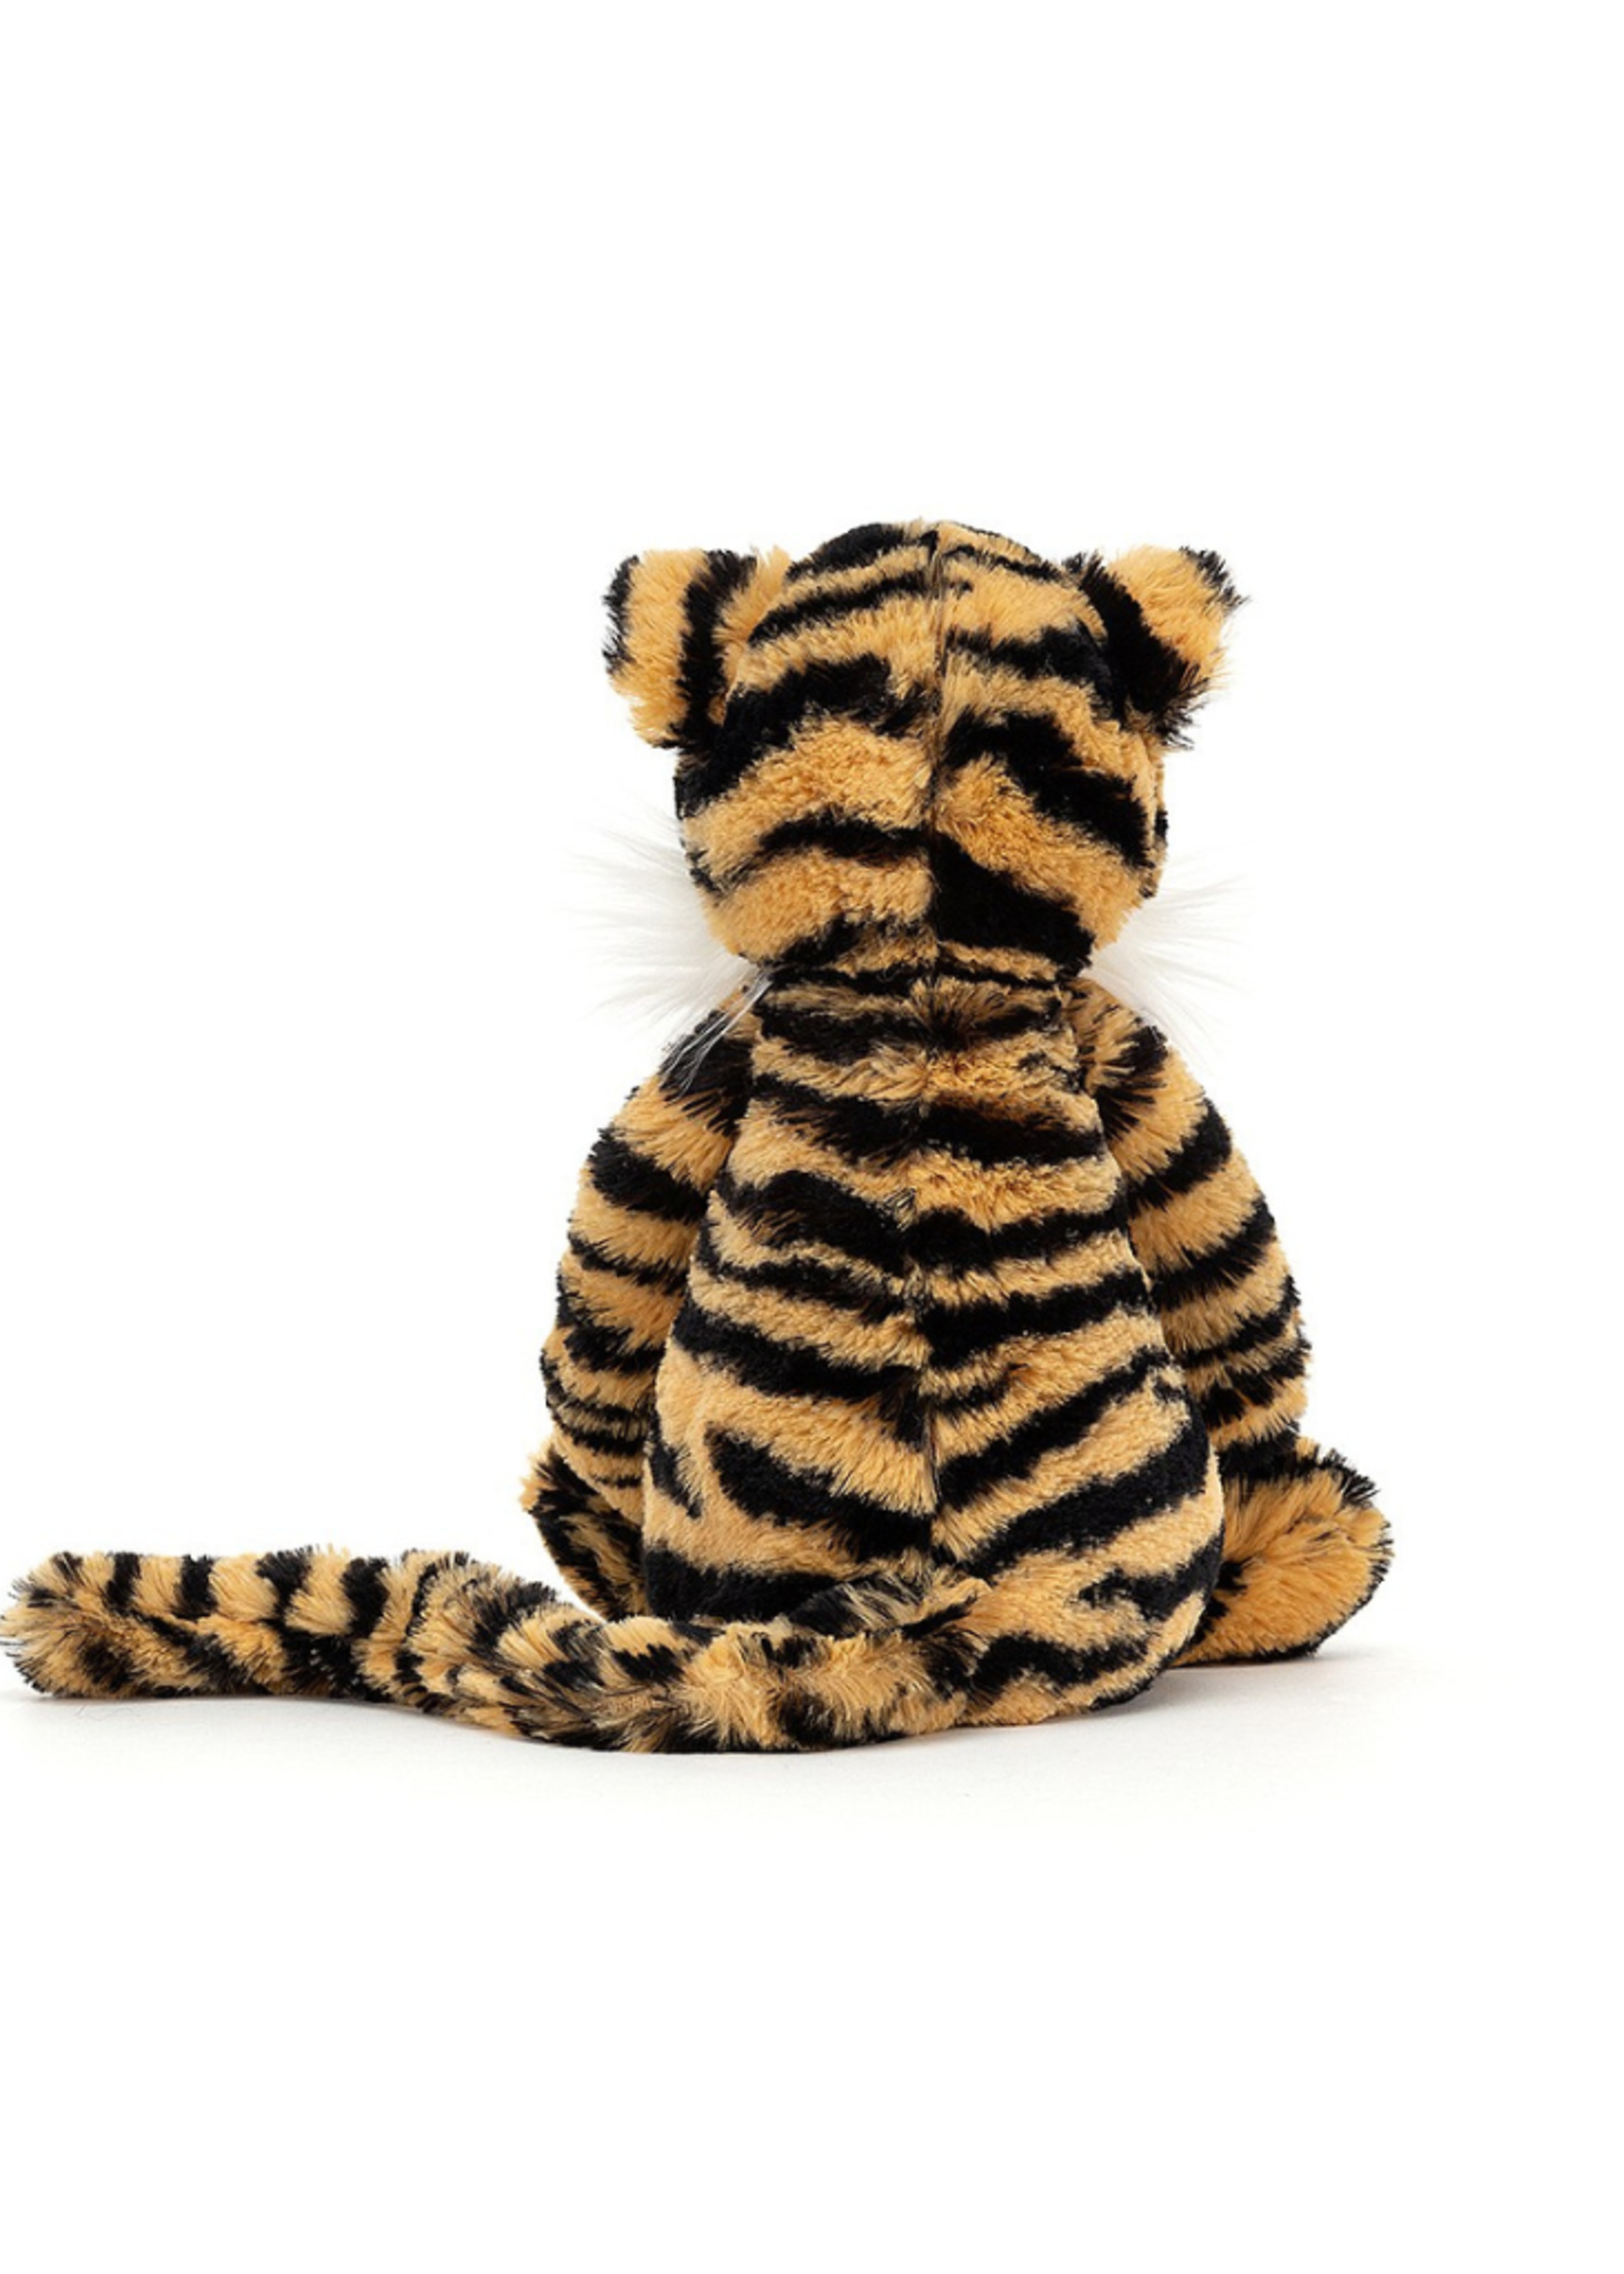 Jellycat Jellycat - Bashful Tiger